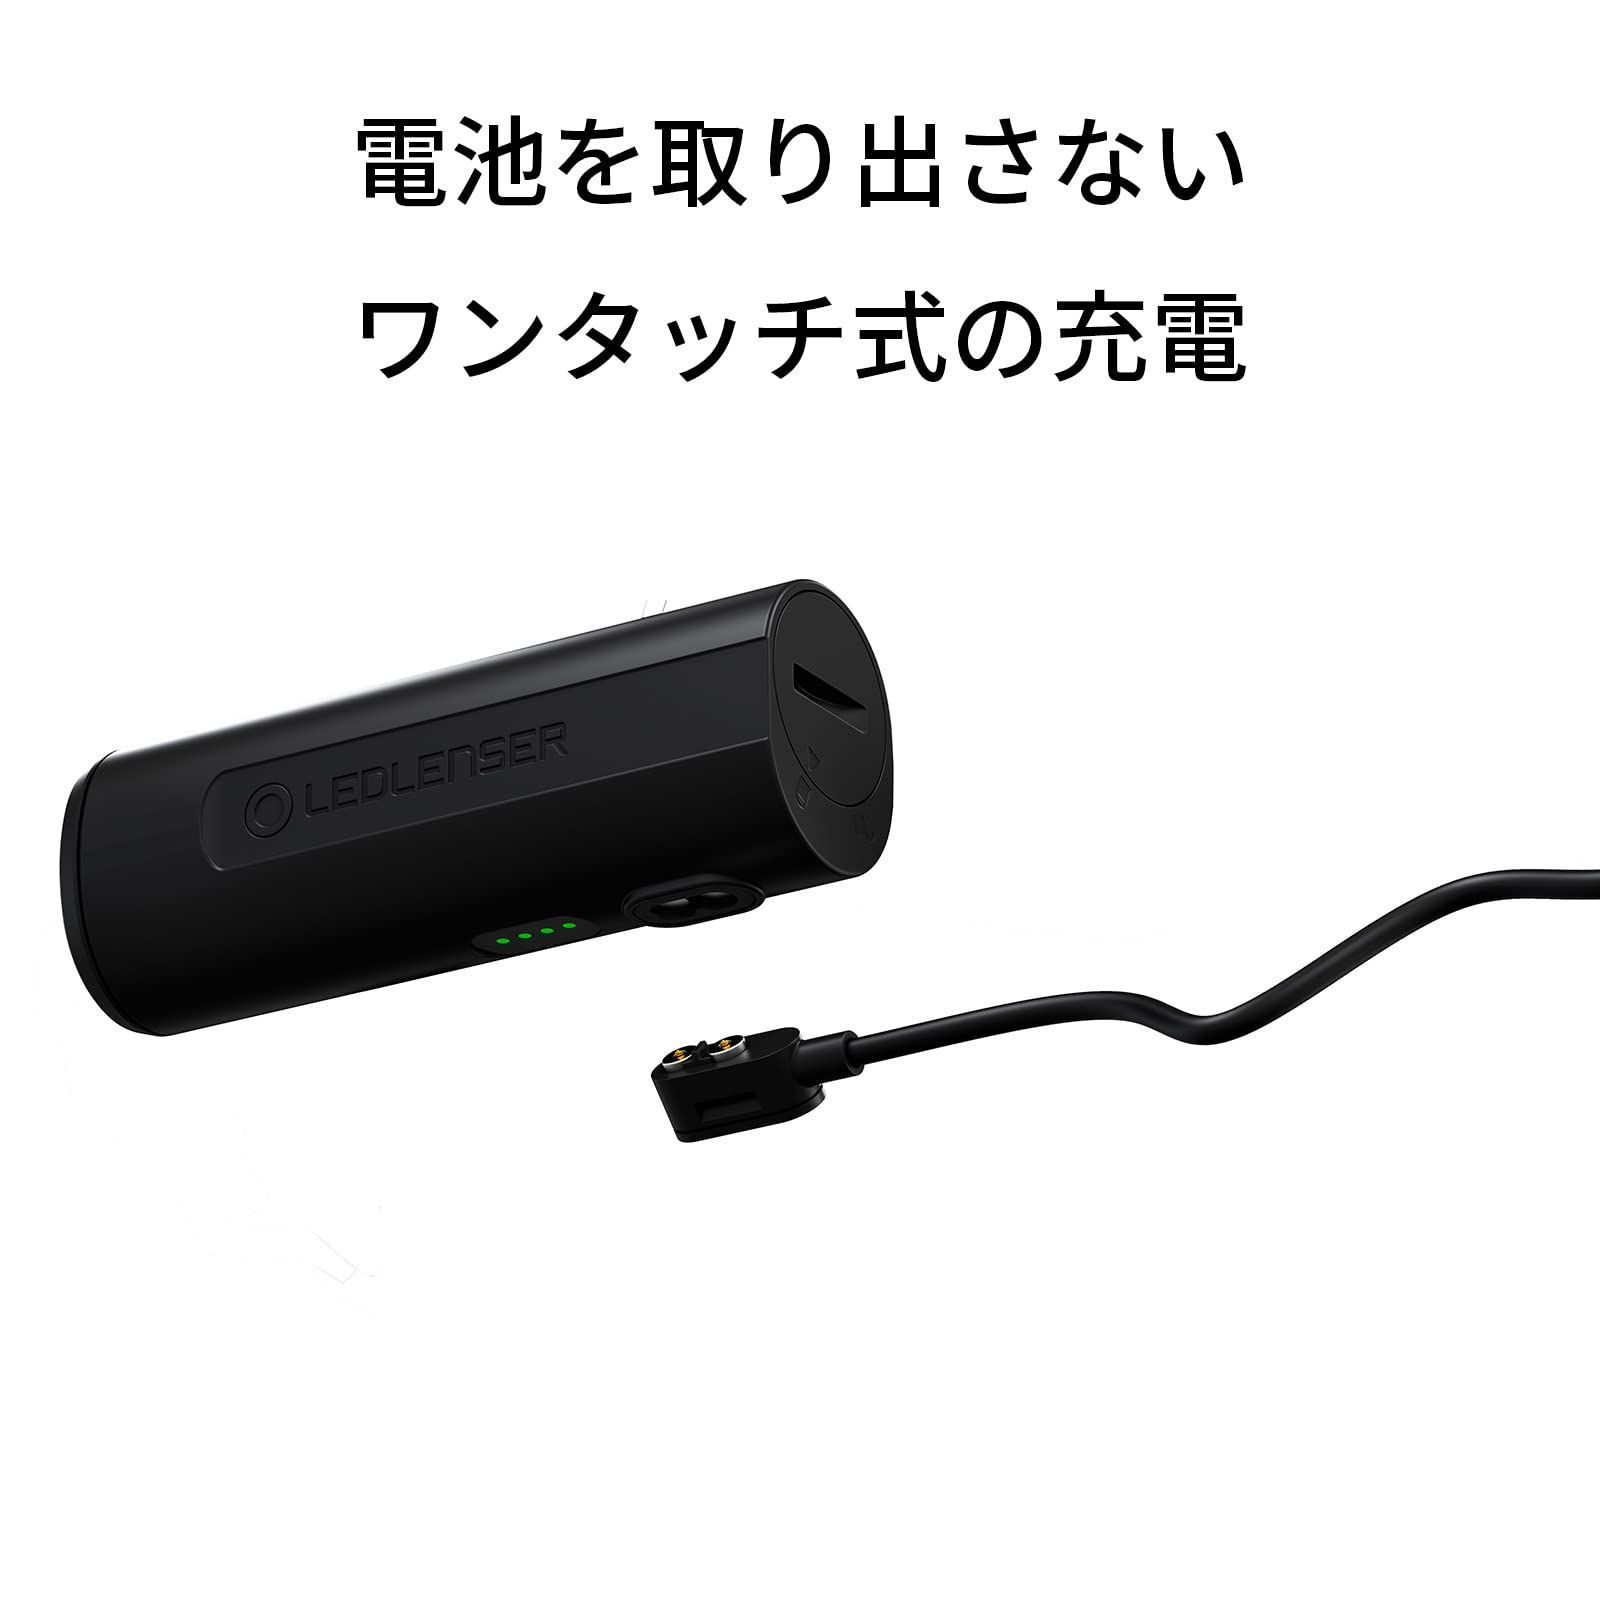 特価セール】Ledlenser(レッドレンザー) H7R Core LEDヘッドライト USB充電式 [日本正規品] black 小 FFショップ  【土日祝お休みです】 メルカリ